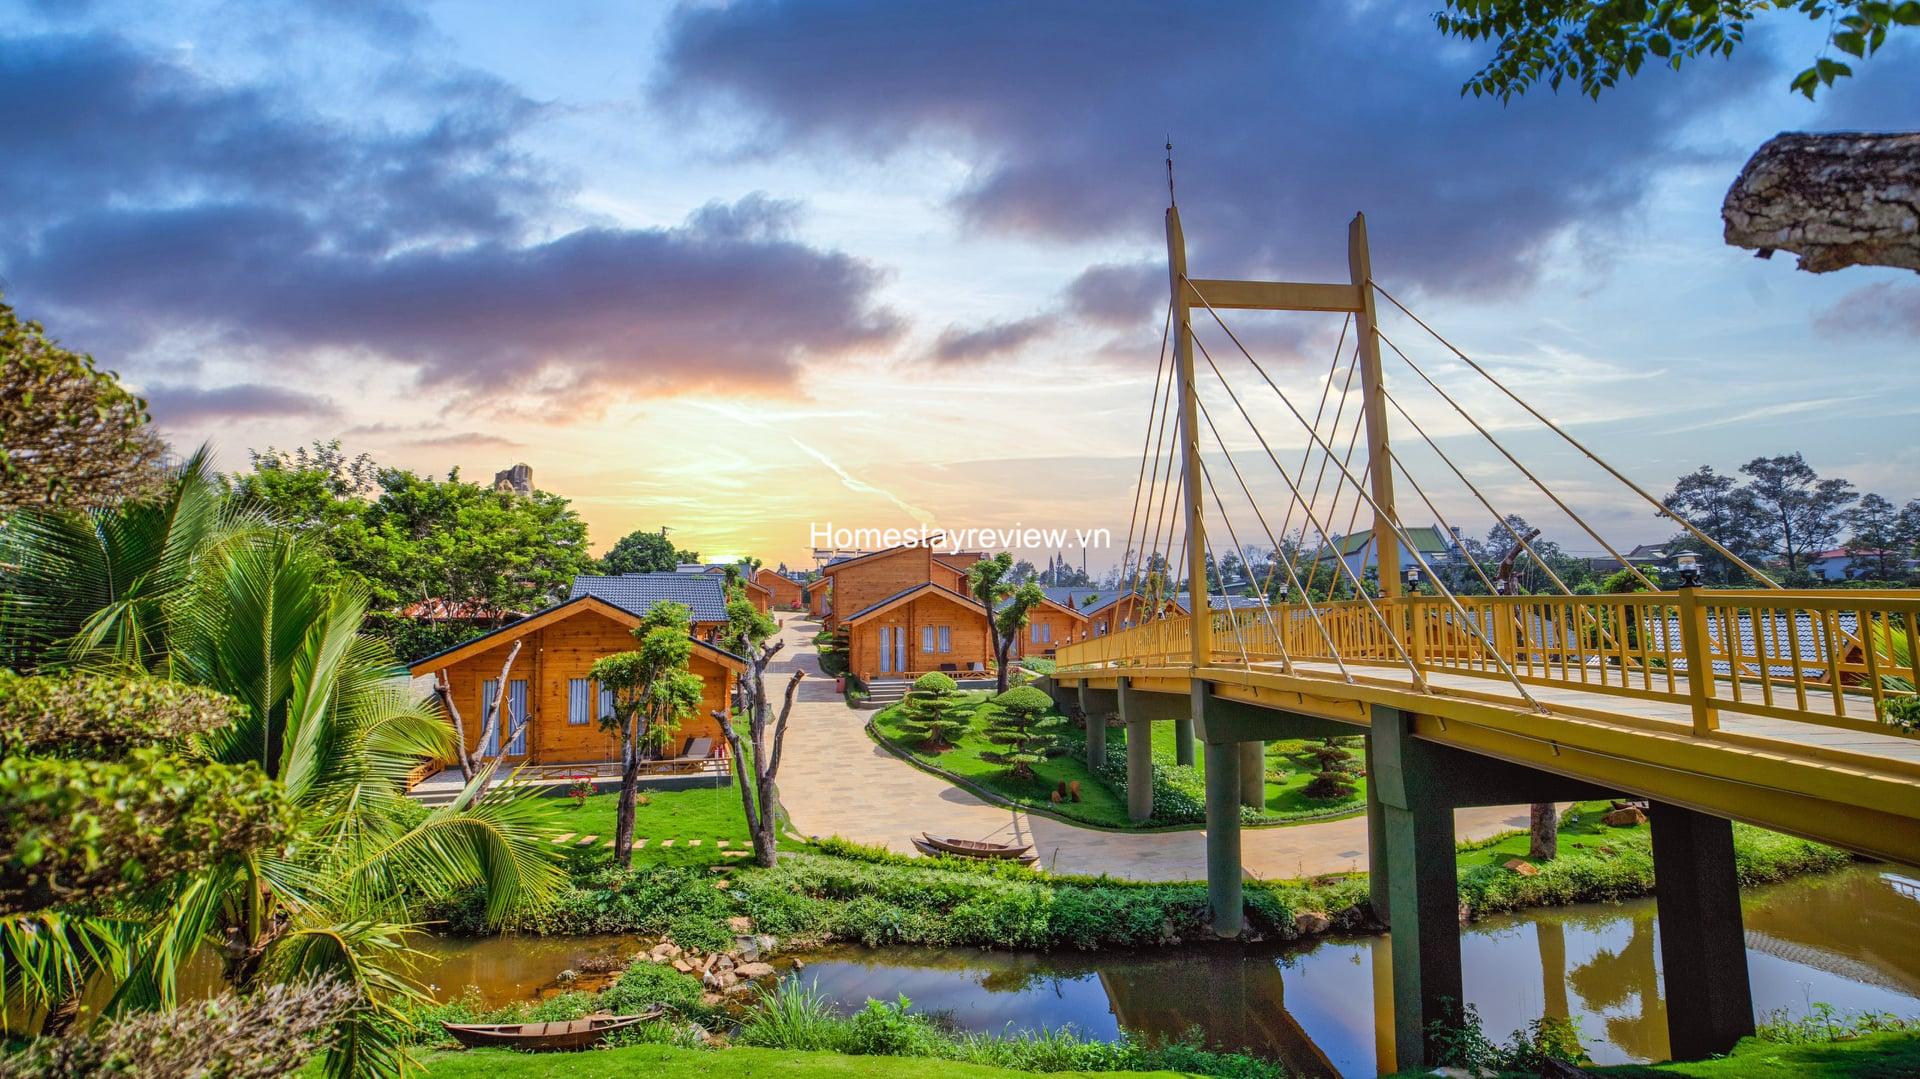 Top 20 Khách sạn resort villa nhà nghỉ homestay Bảo Lộc giá rẻ ...